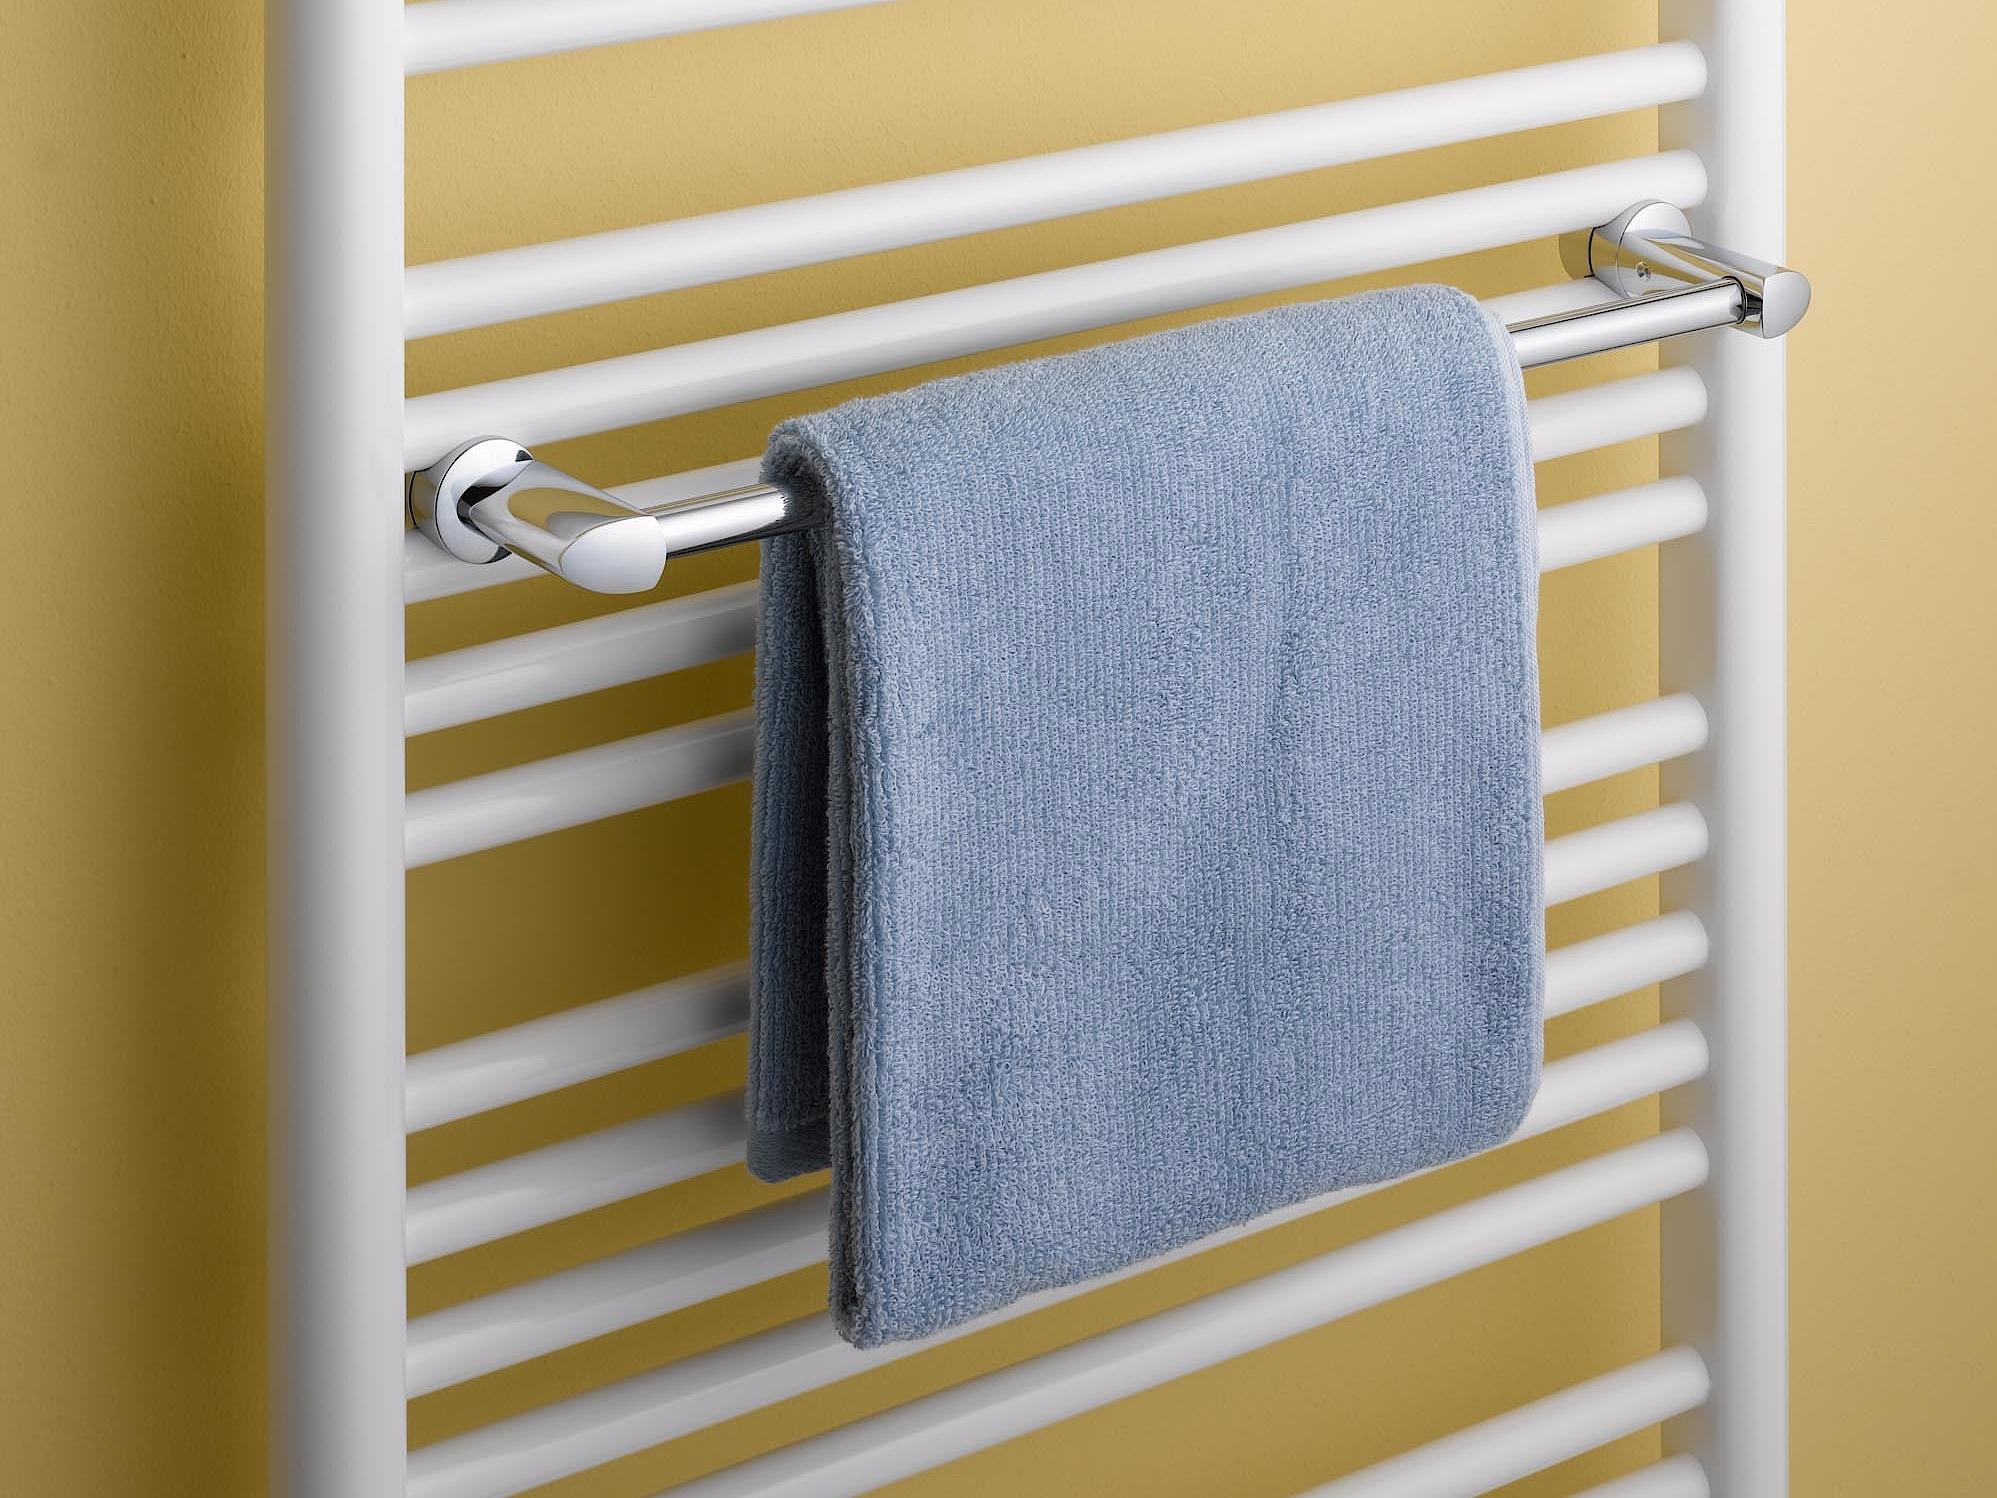 Radiateur design et de salle de bain Geneo circle de Kermi barre porte-serviettes.